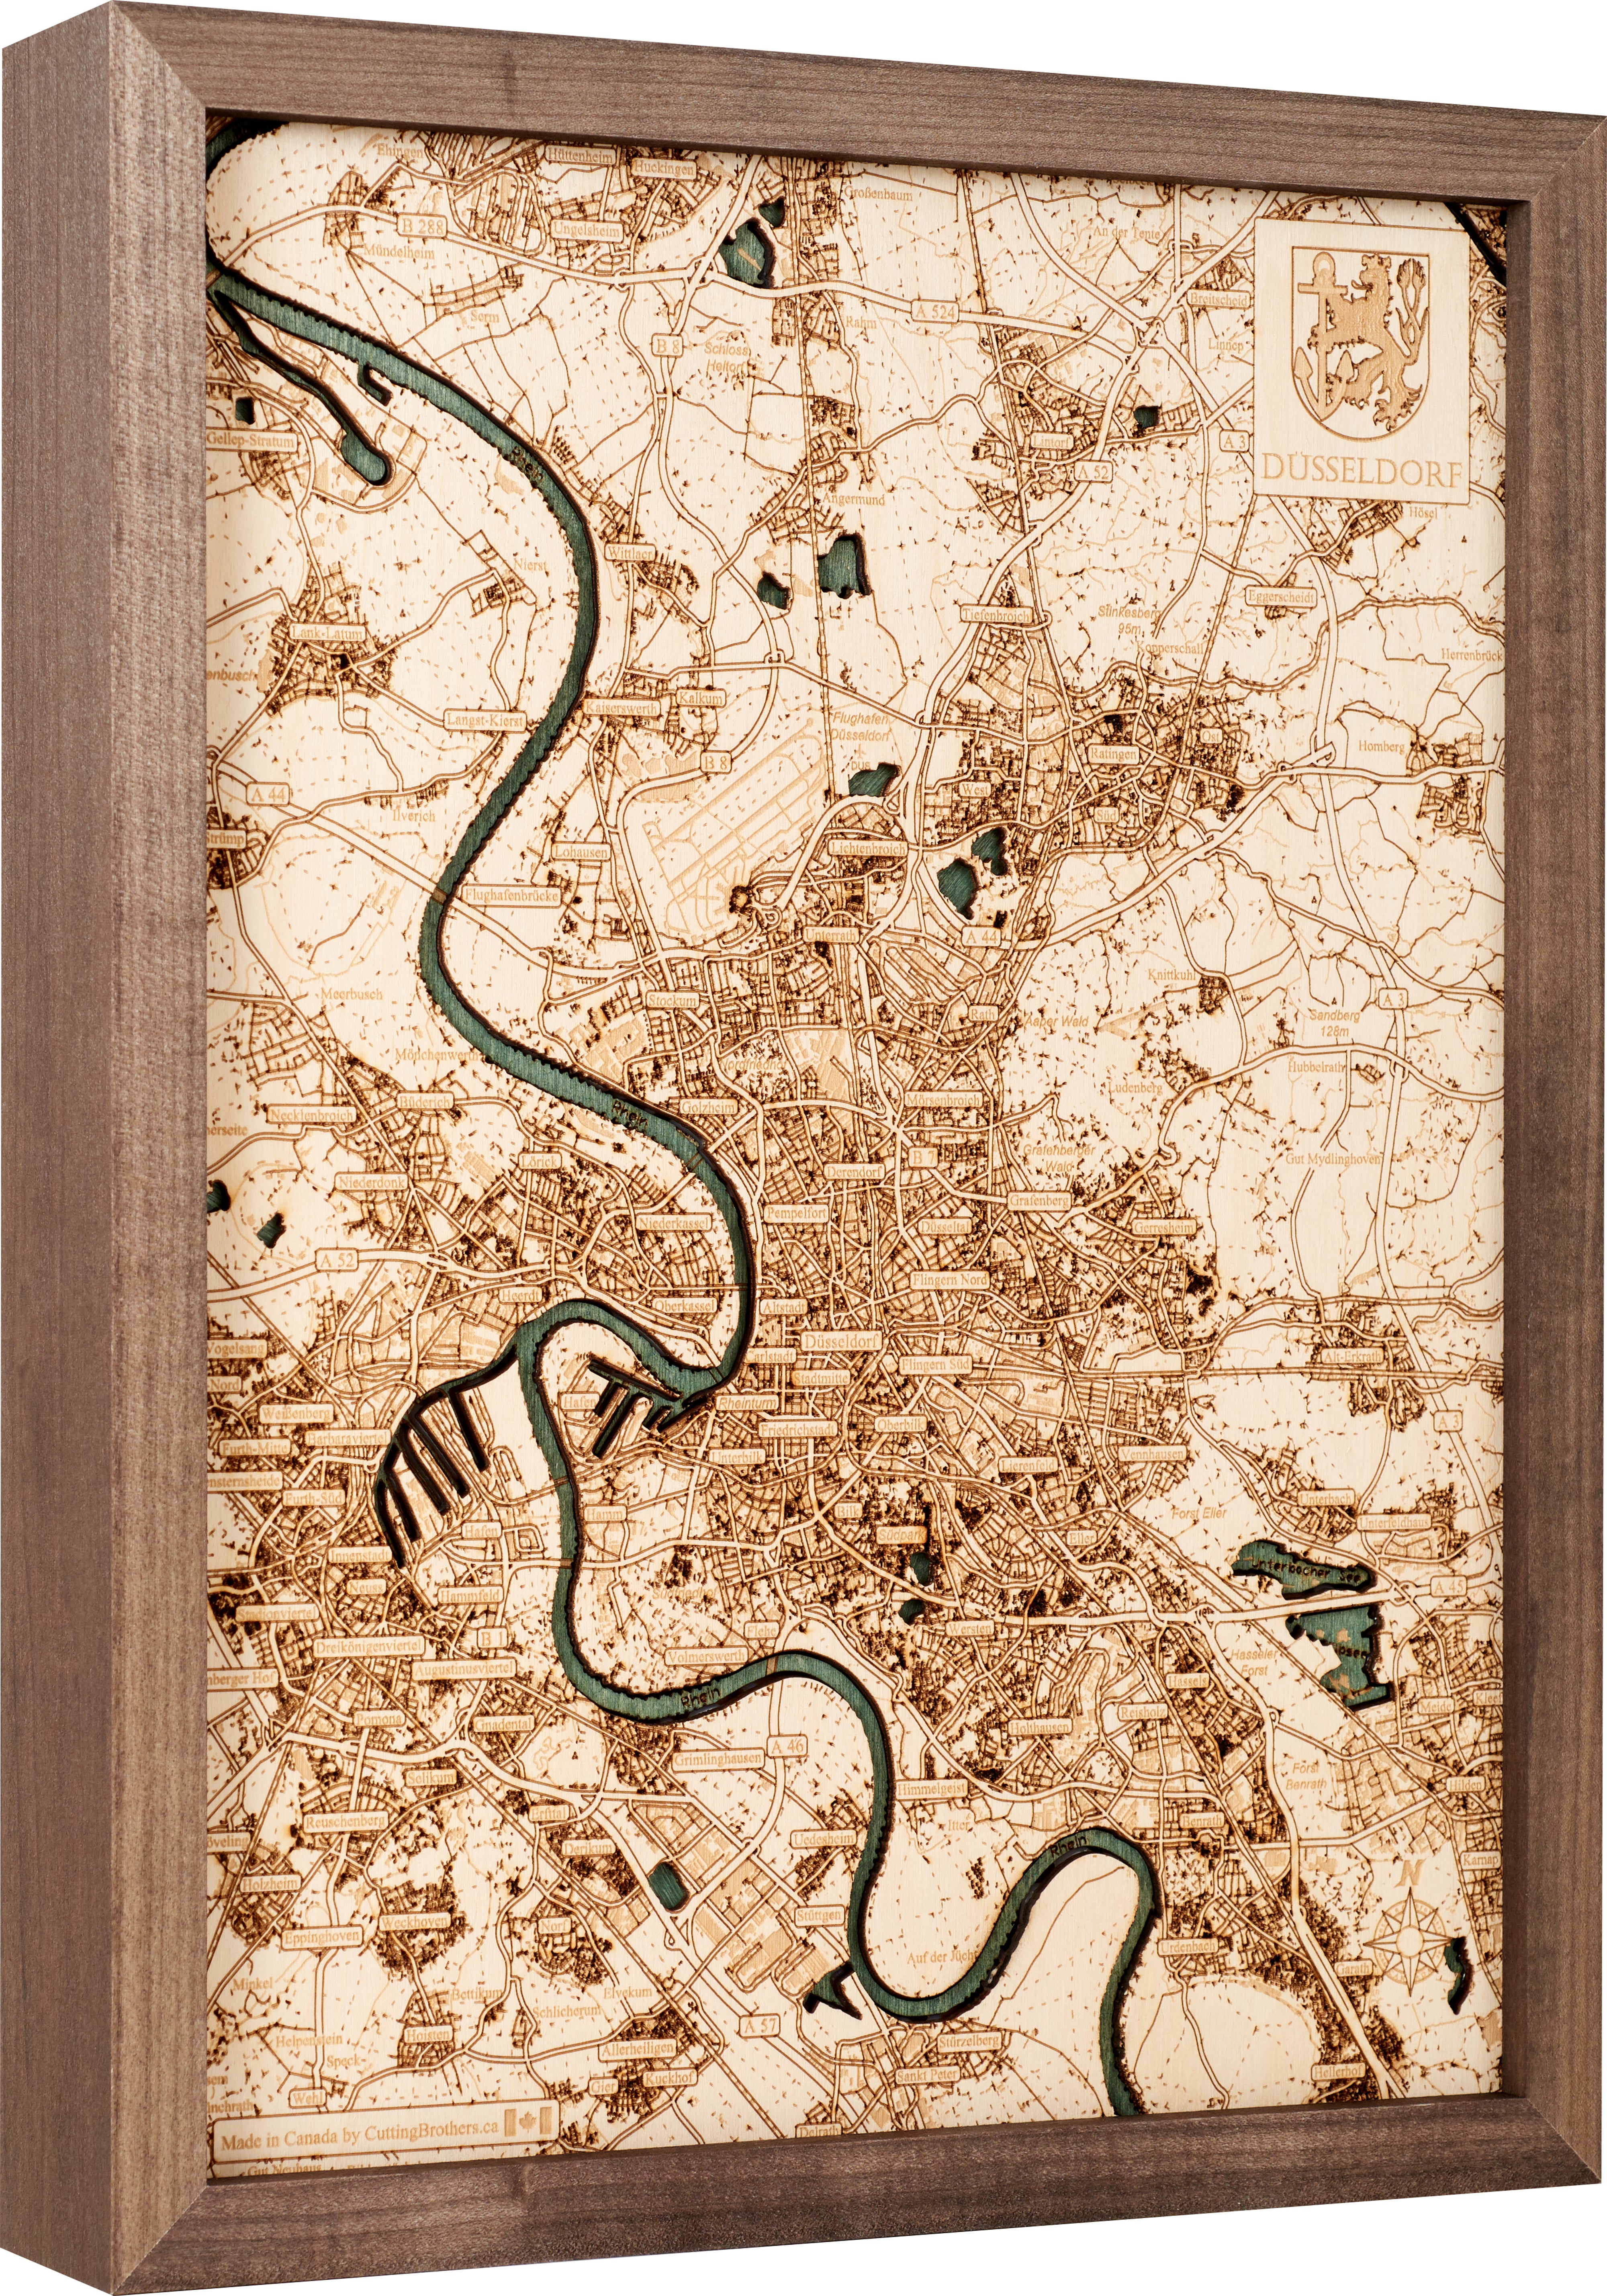 DÜSSELDORF 3D wooden wall map - version S